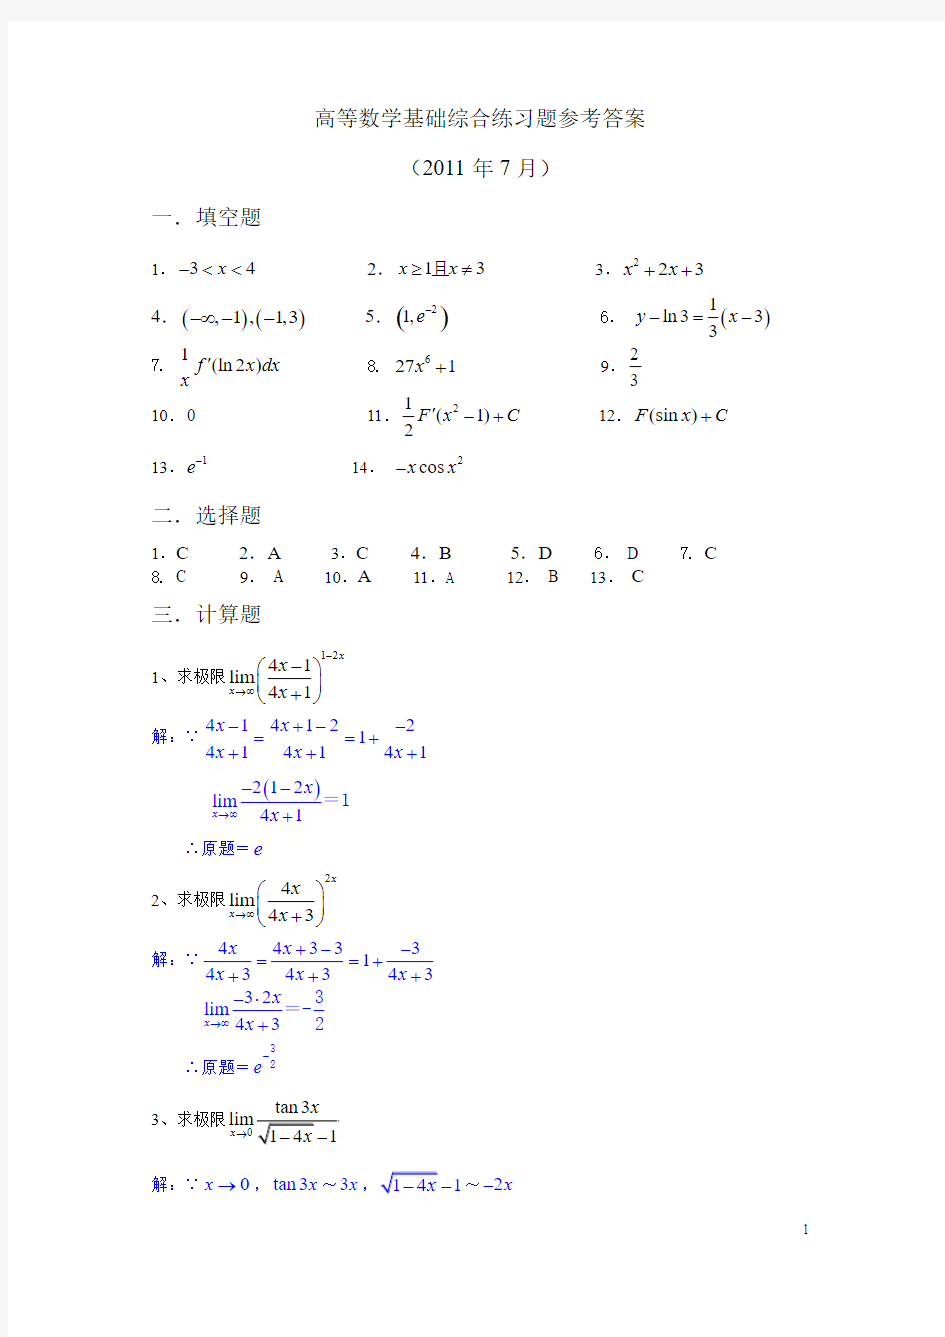 高等数学基础综合练习题(201107)解答